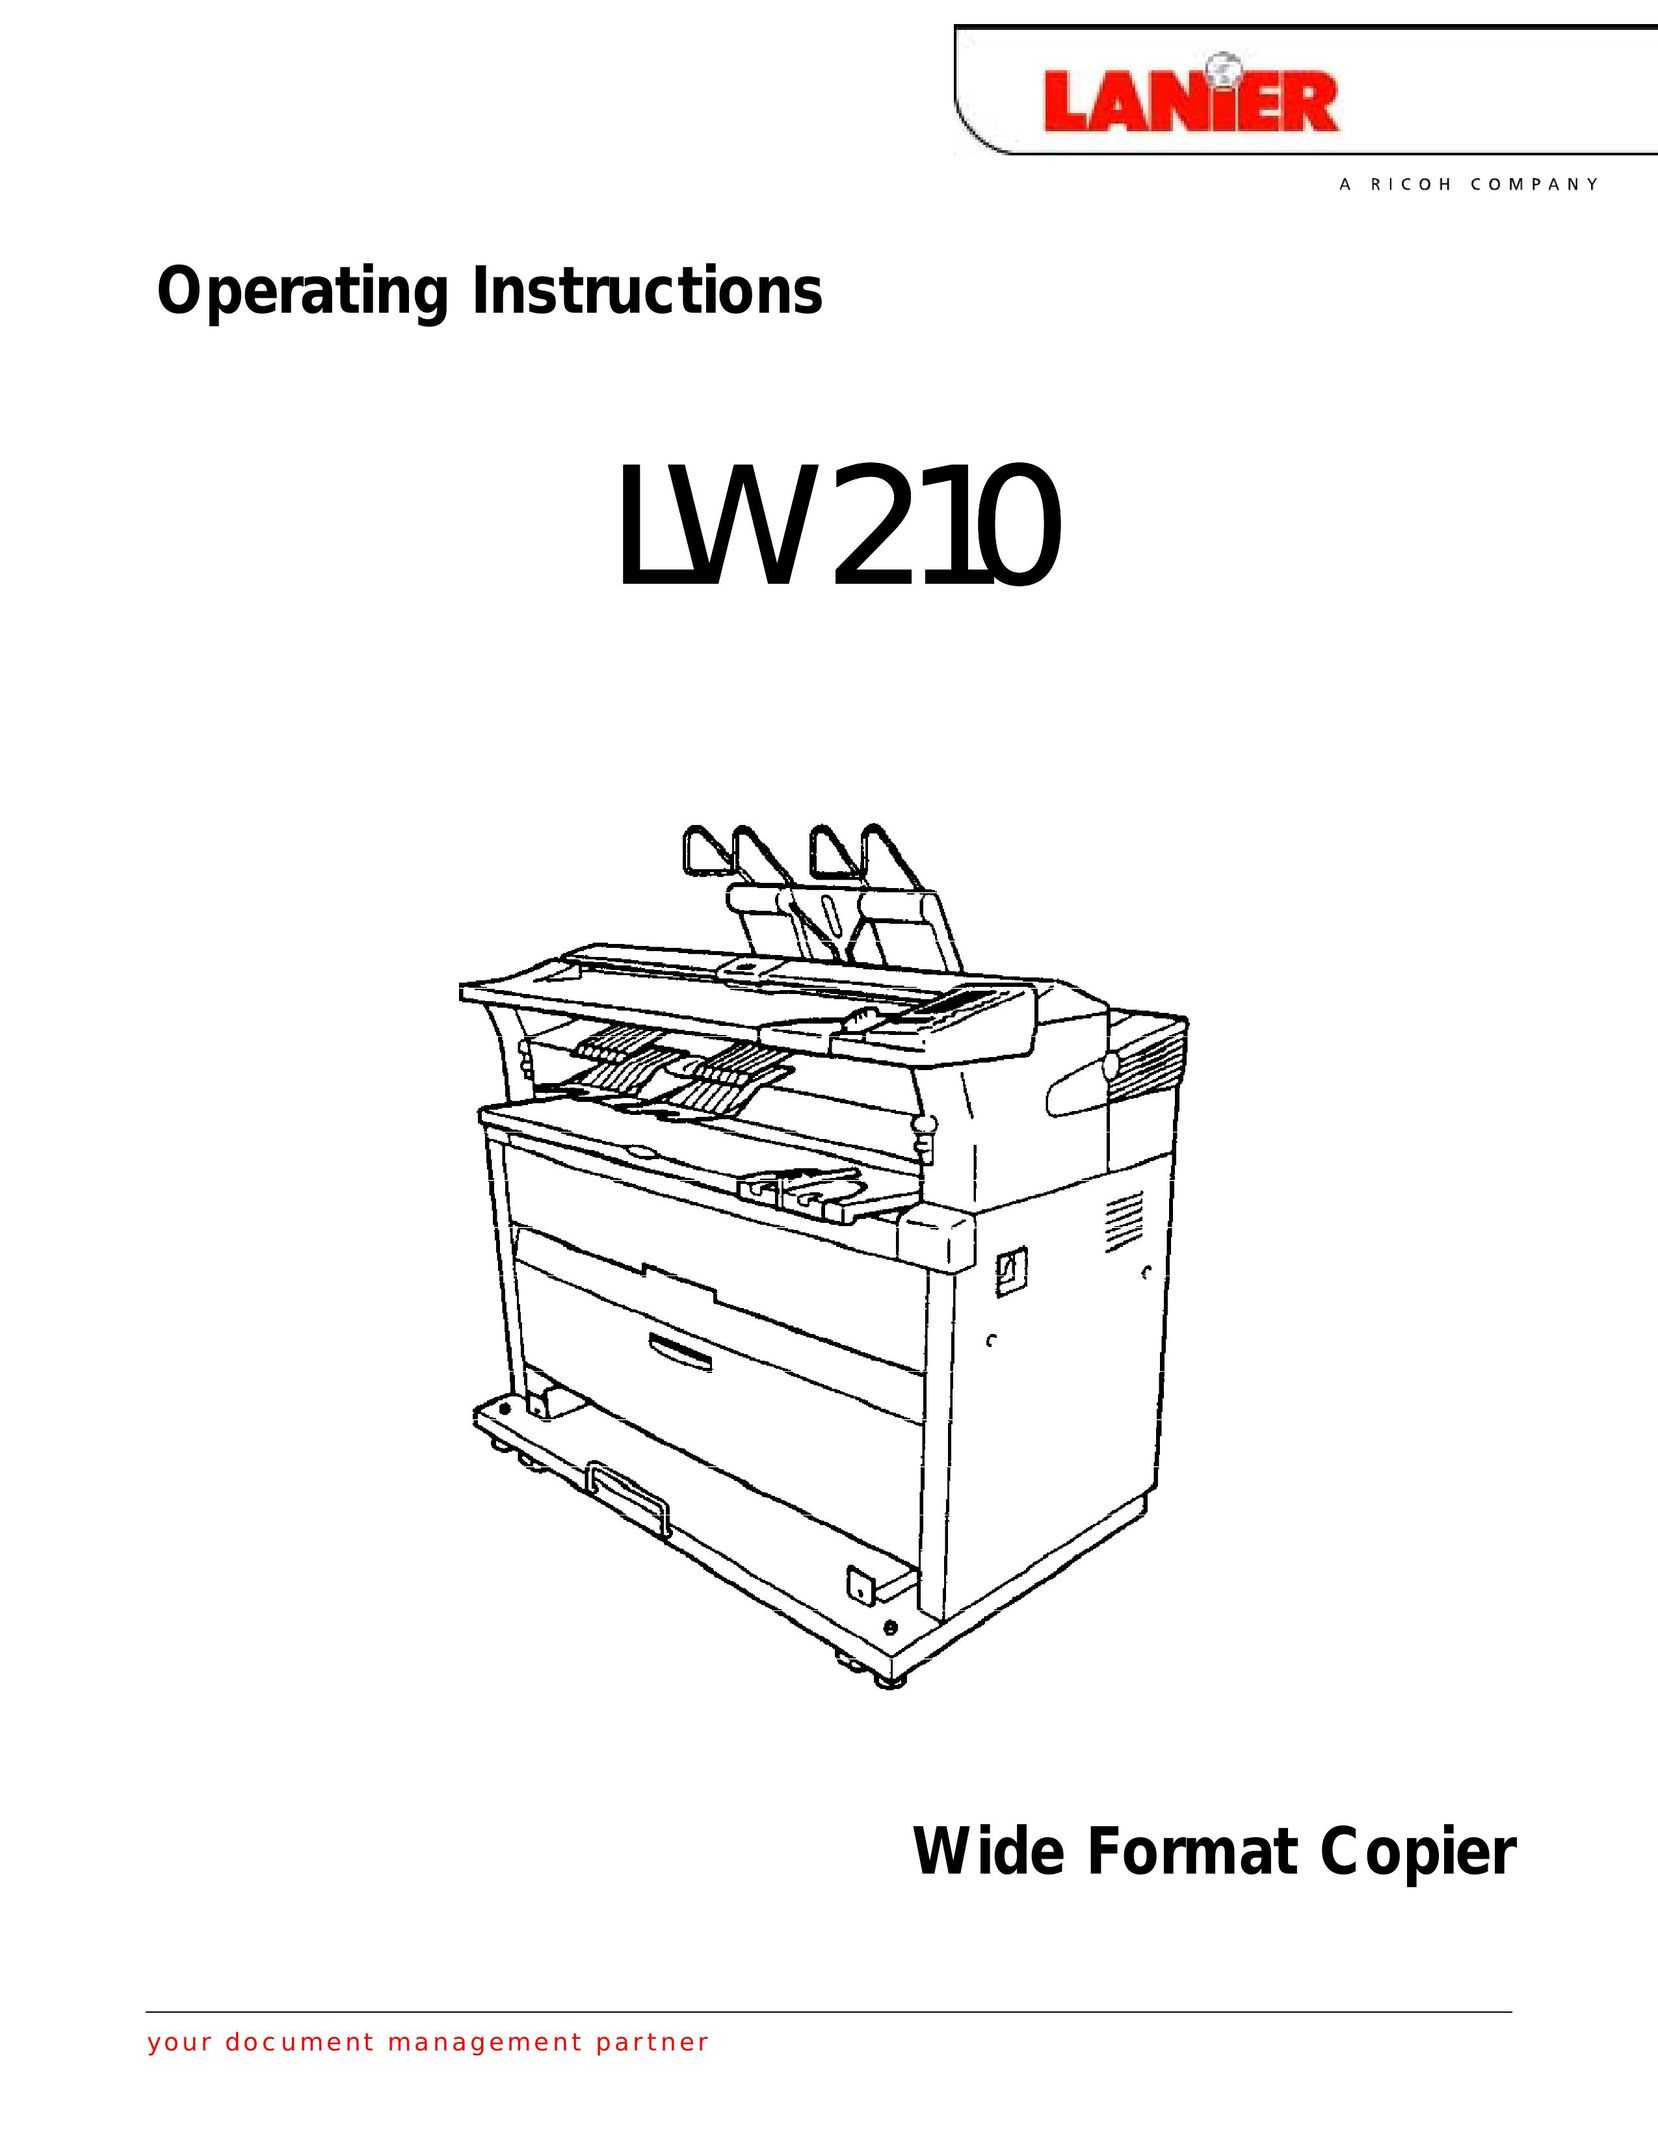 Lanier LW 210 Copier User Manual